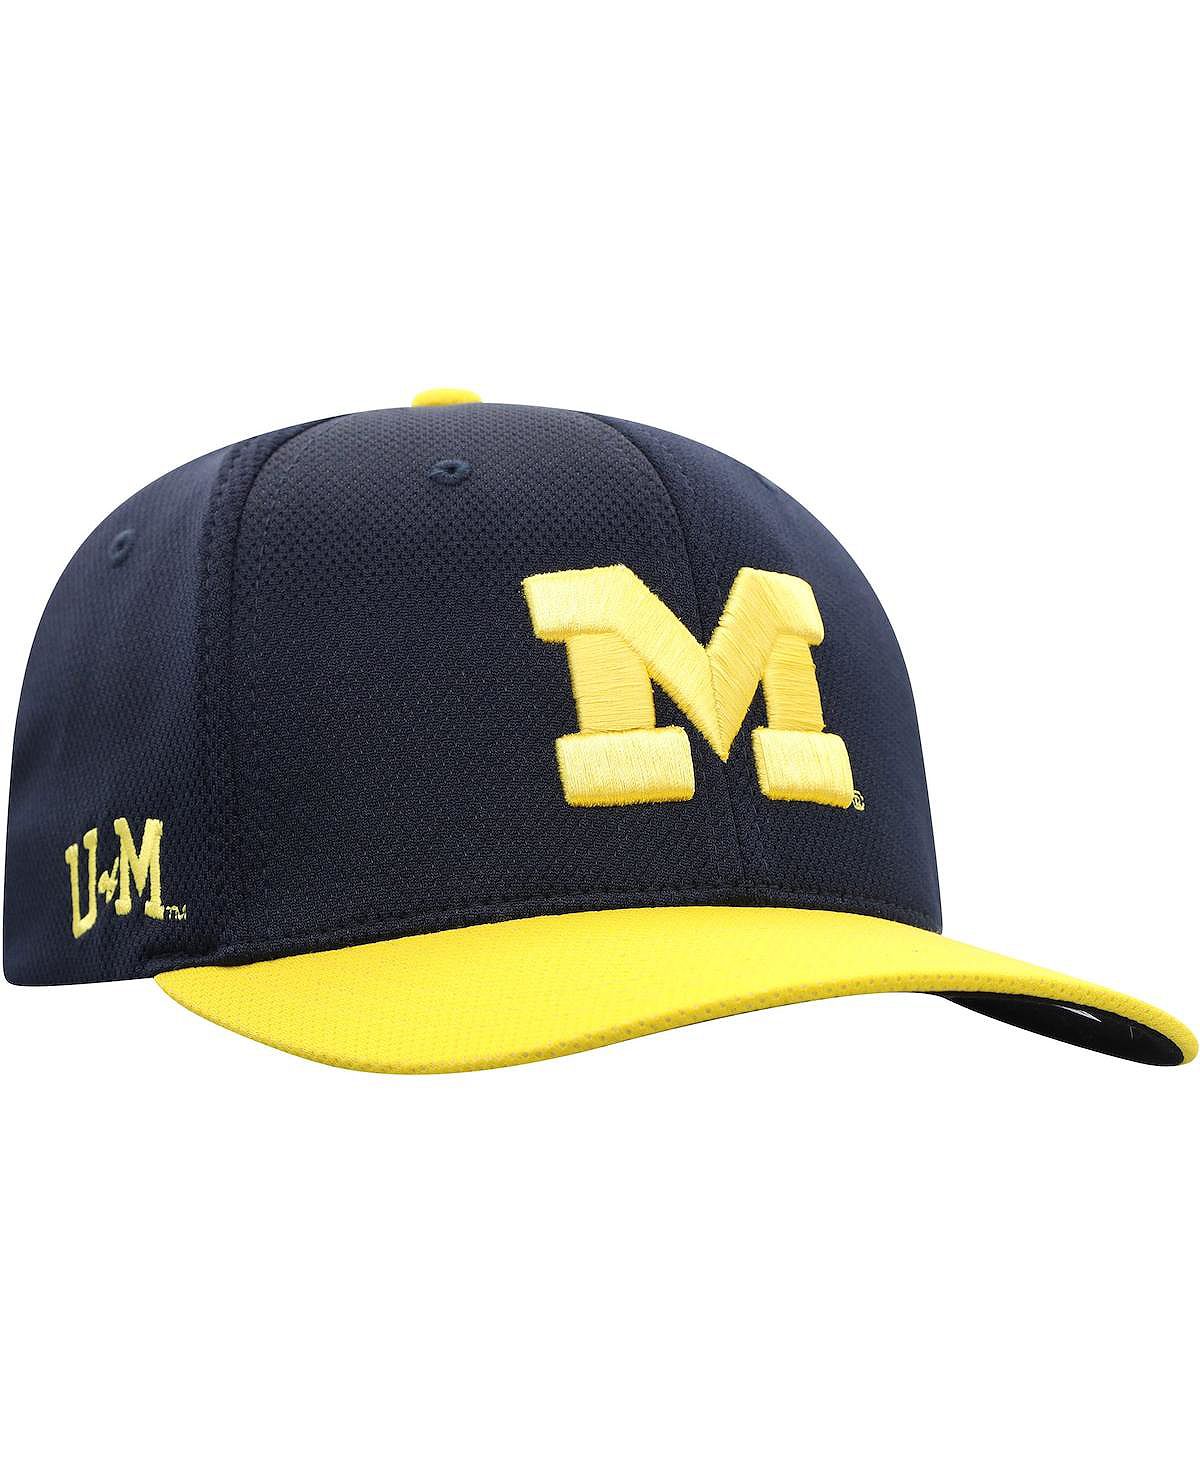 Мужская двухцветная кепка Reflex Hybrid Tech Flex темно-синего цвета с кукурузой Michigan Wolverines Top of the World